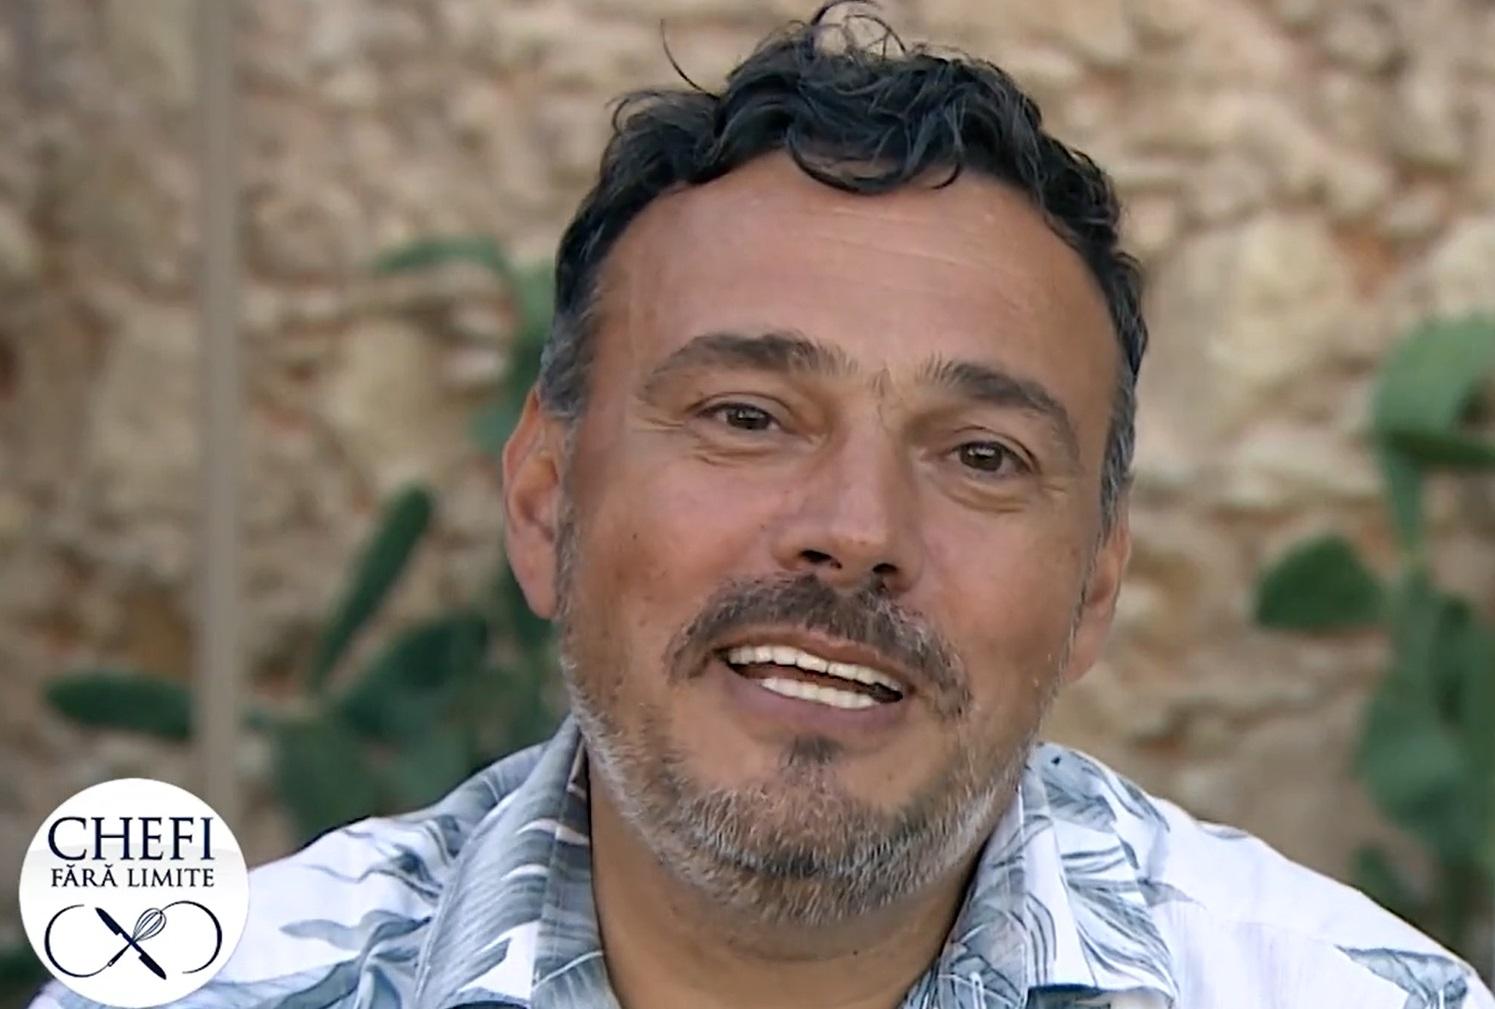 Ποιος είναι ο σεφ Iosif Ștefănescu, ο συμπαθής συμπαρουσιαστής της εκπομπής του Antena 1 Chefi sans Limites